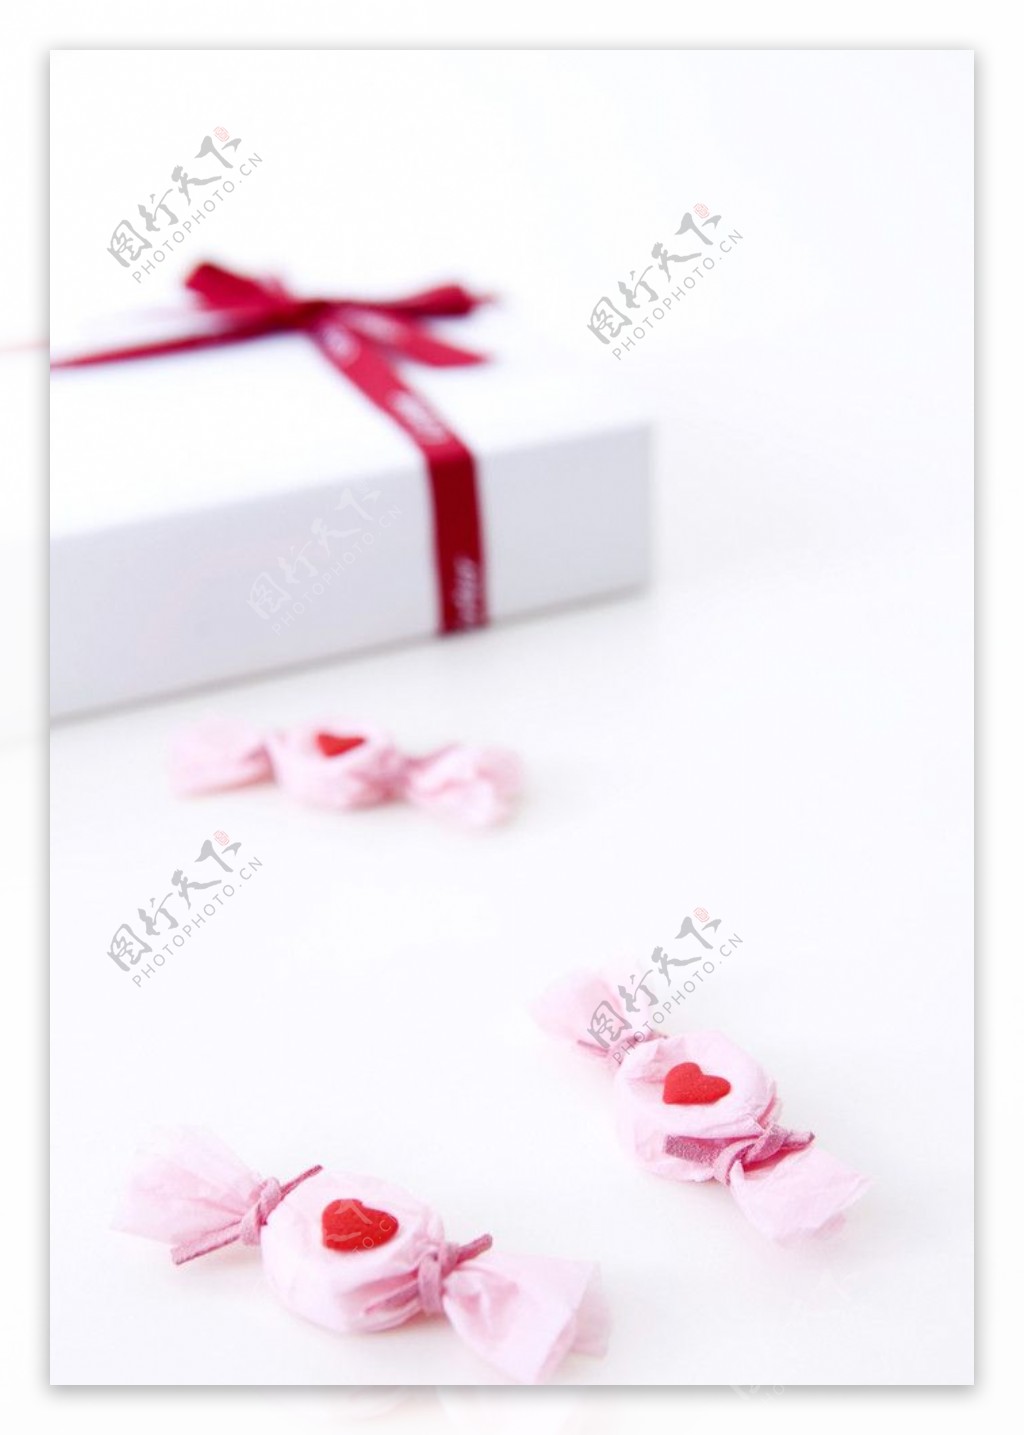 礼盒和粉色糖果图片